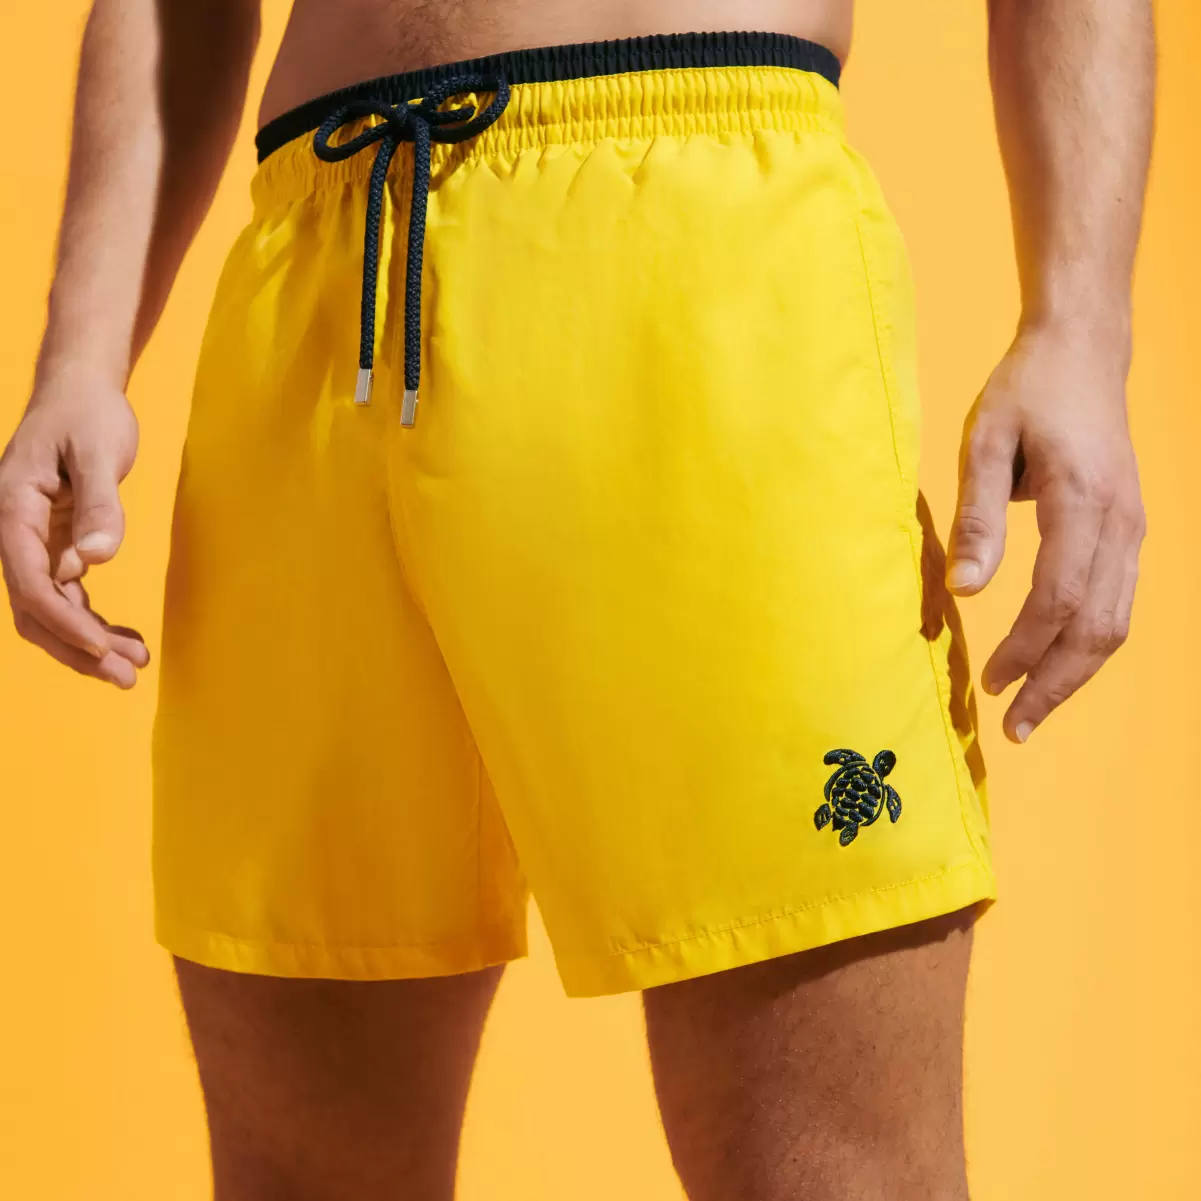 Herren Sonne / Gelb Zweifarbige Solid Bicolore Badeshorts Für Herren Der Klassiker Moorea Marke Vilebrequin - 2